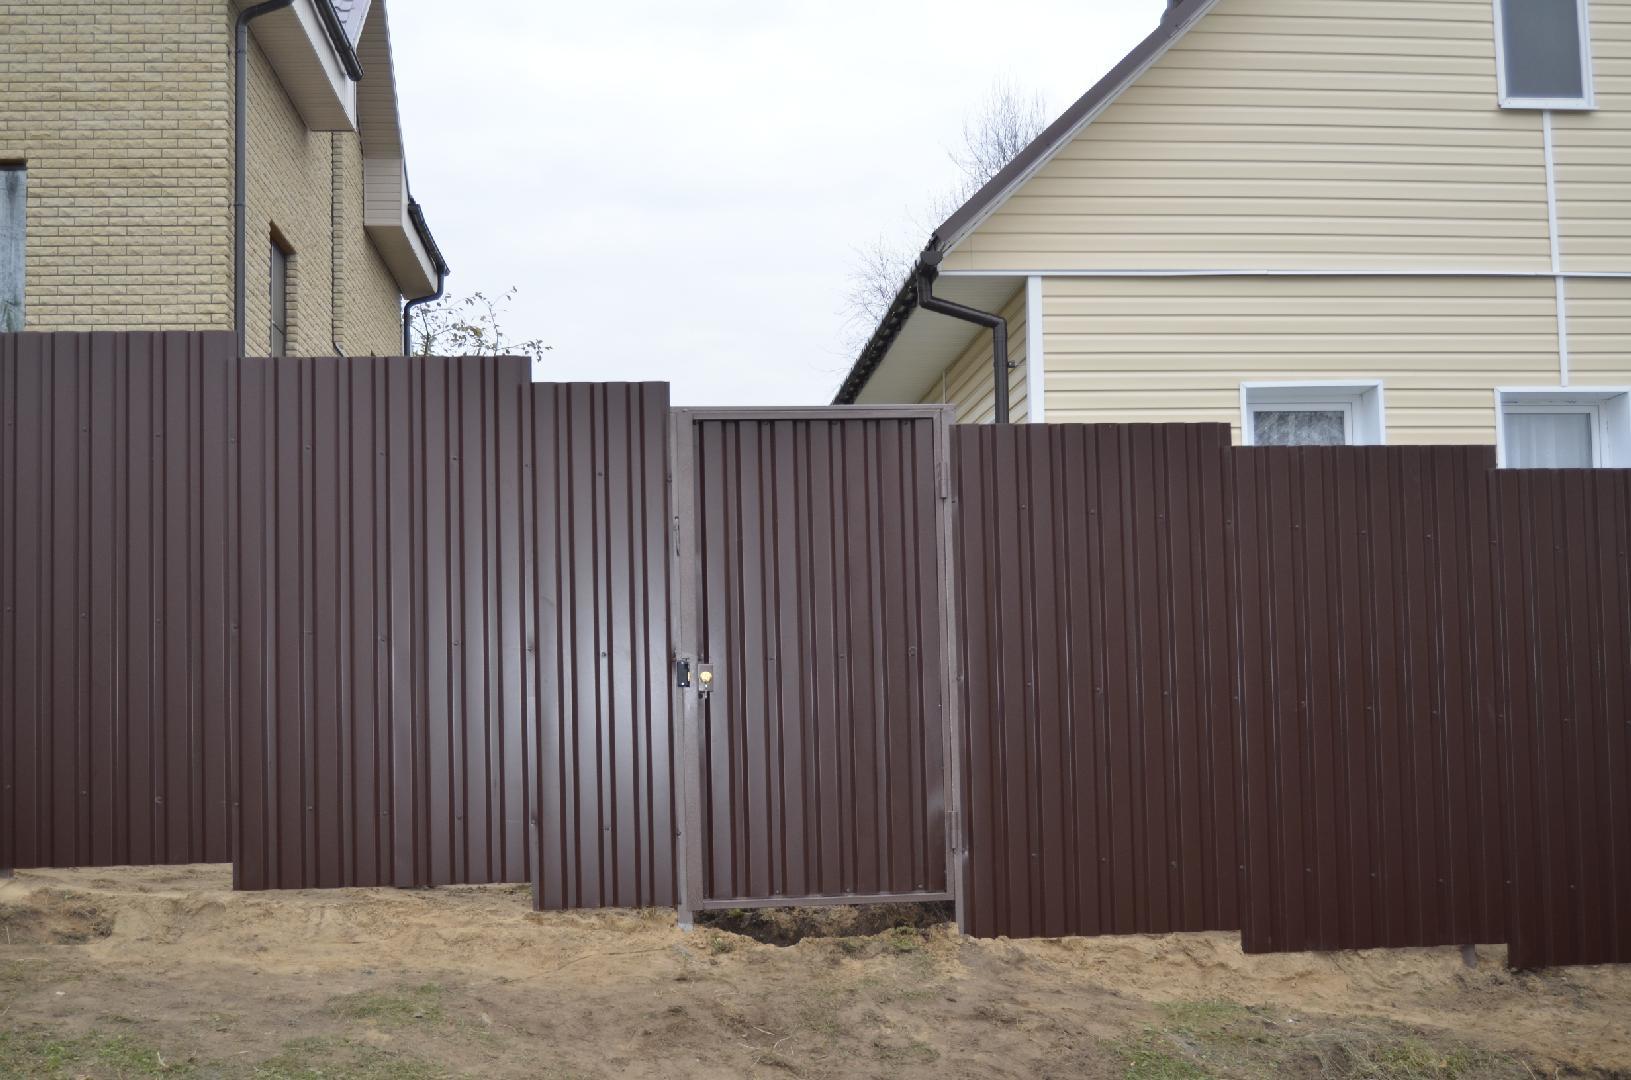 Забор из профлиста фото коричневый: из профнастила, из штакетника, из дерева